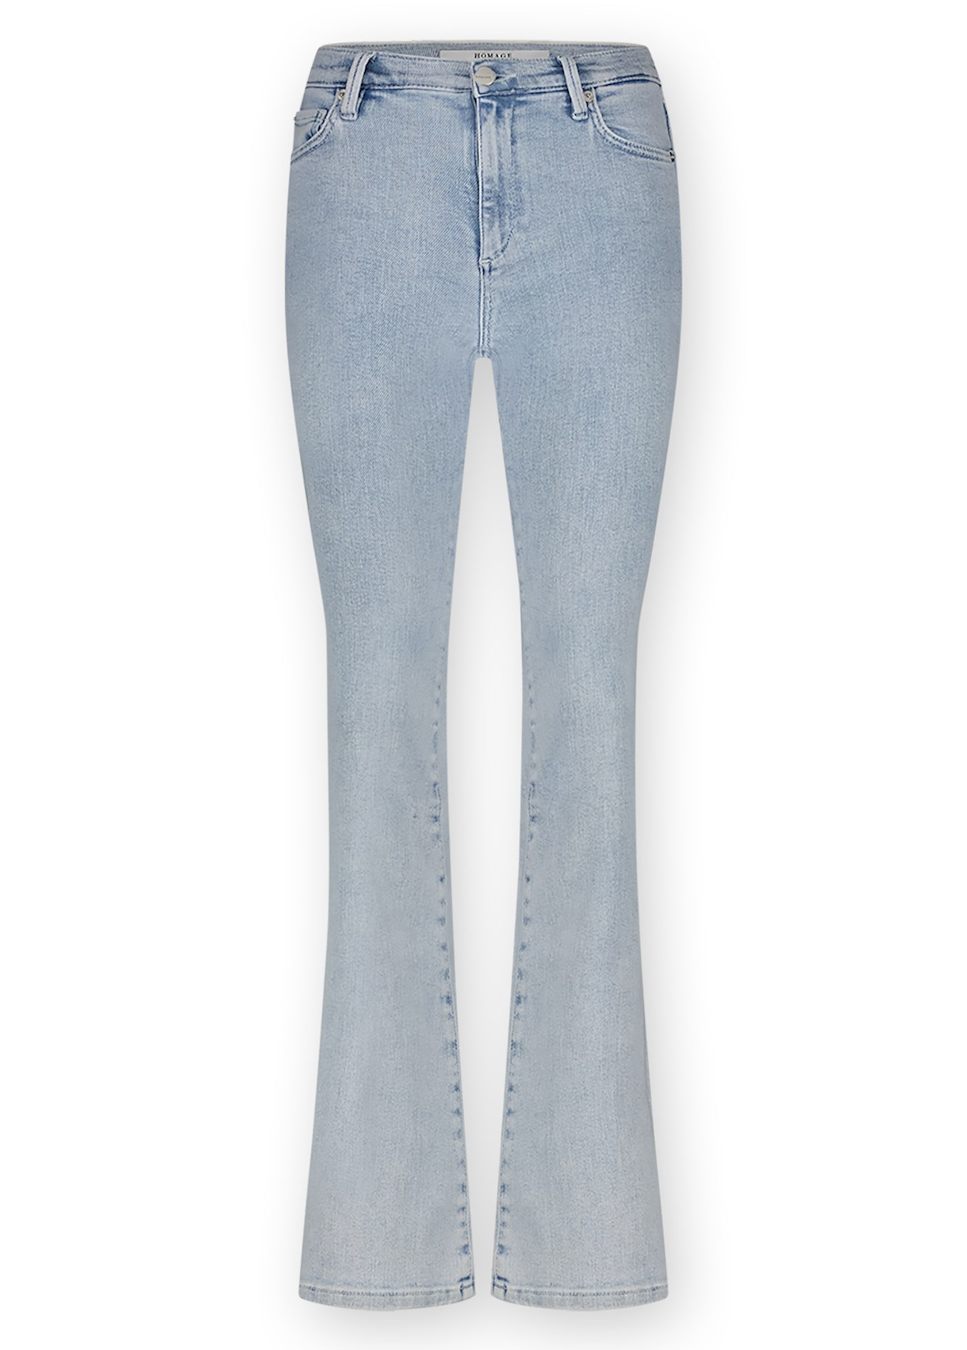 Lichtblauwe flared jeans van het merk Homage. De 'Jane - Flared Jeans' is gemaakt van een comfortabele stretchstof die zijn vorm de hele dag behoudt. De flared jeans heeft een hoge taille, met een strakke pasvorm bij de heupen en loopt vanaf de knie uit in een flare. Shop de nieuwe collectie dames jeans Homage online.